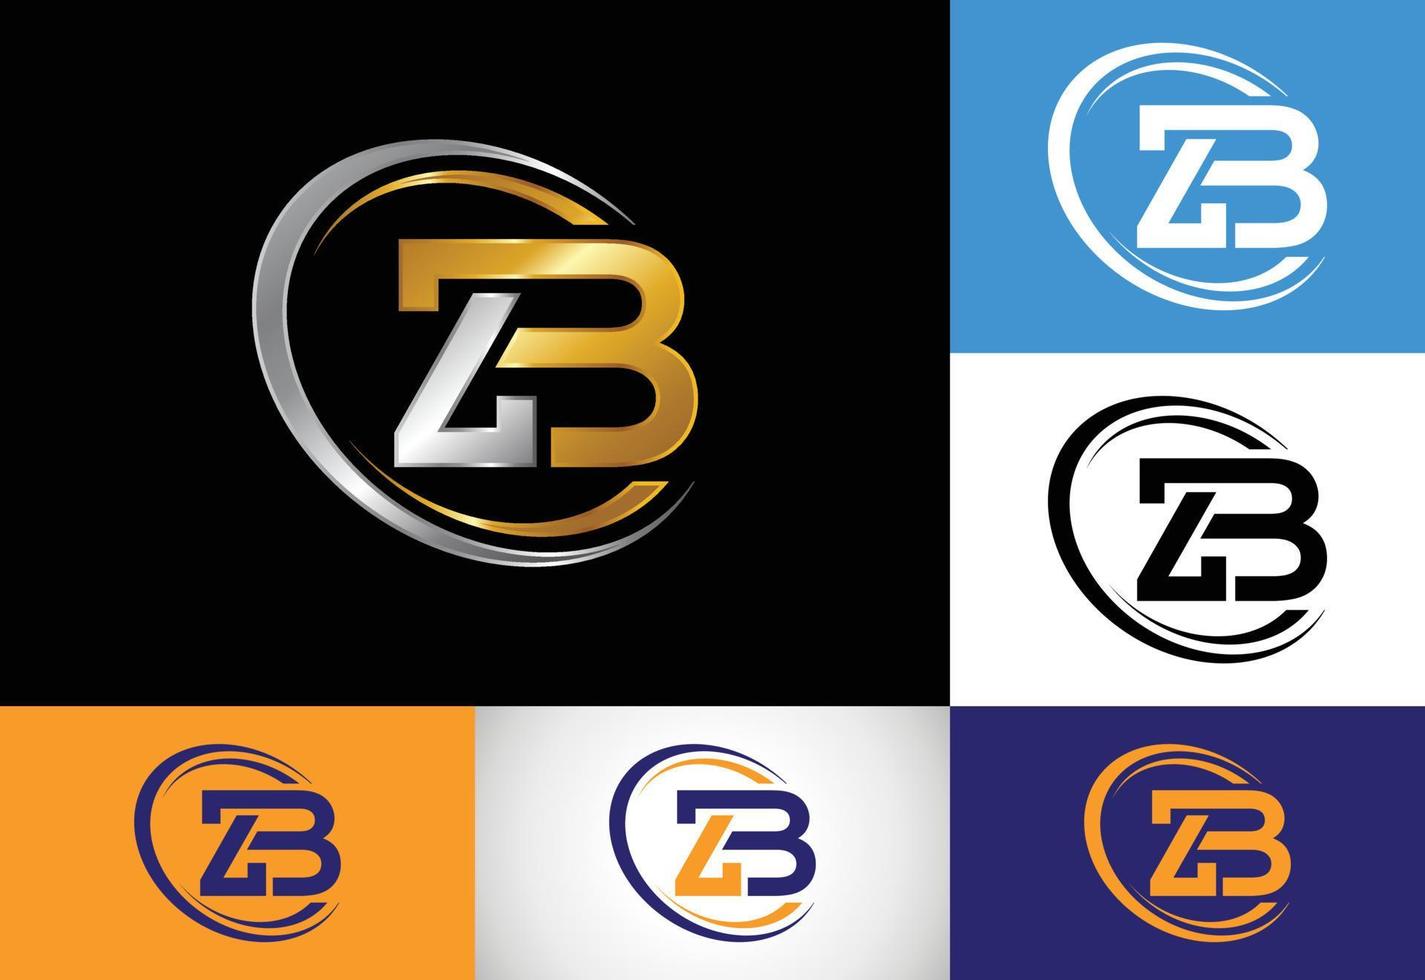 första bokstaven zb logotyp design vektor. grafisk alfabetsymbol för företagets företagsidentitet vektor